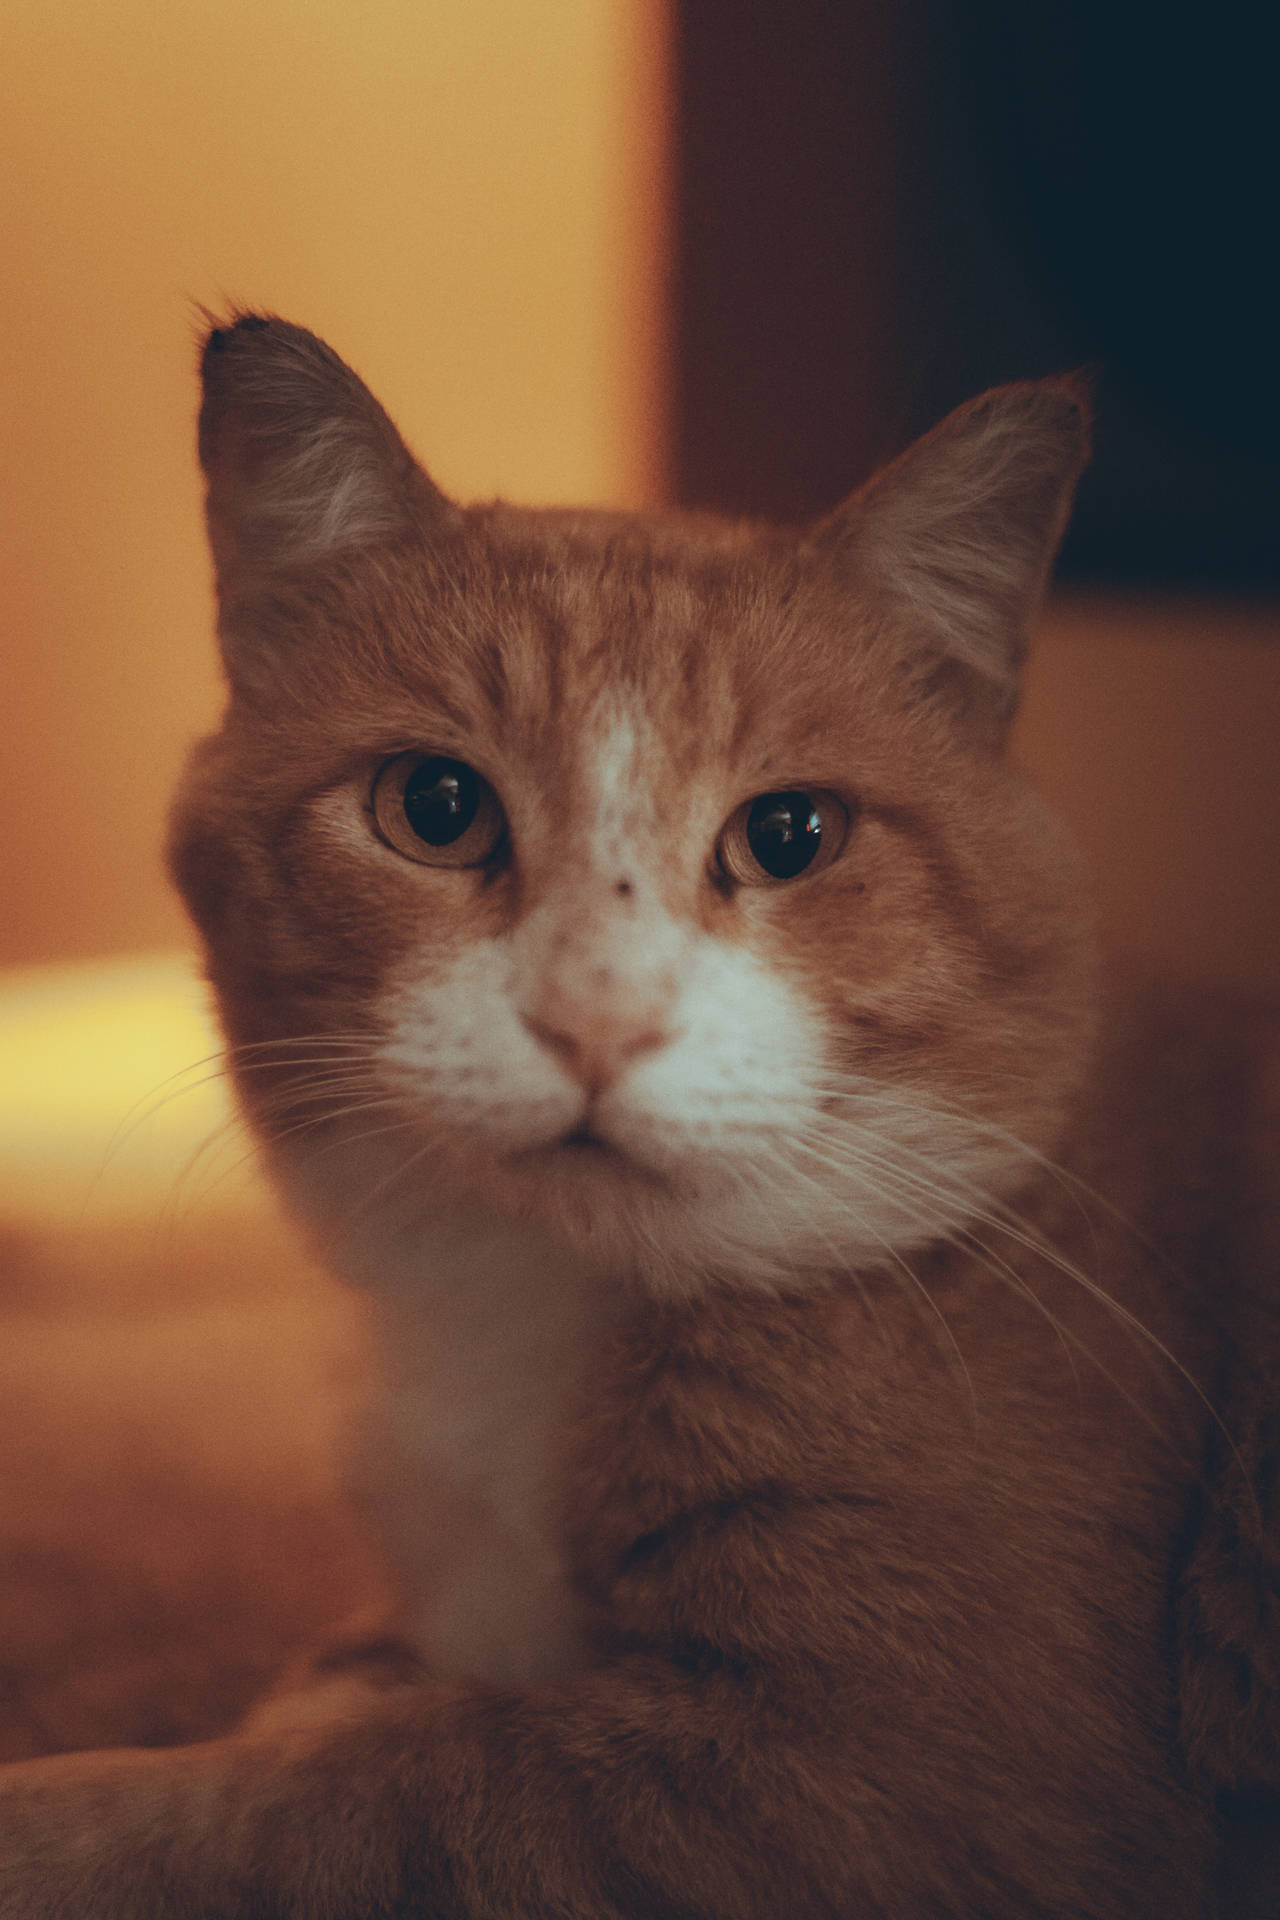 Cute Cat Aesthetic Ginger Tabby